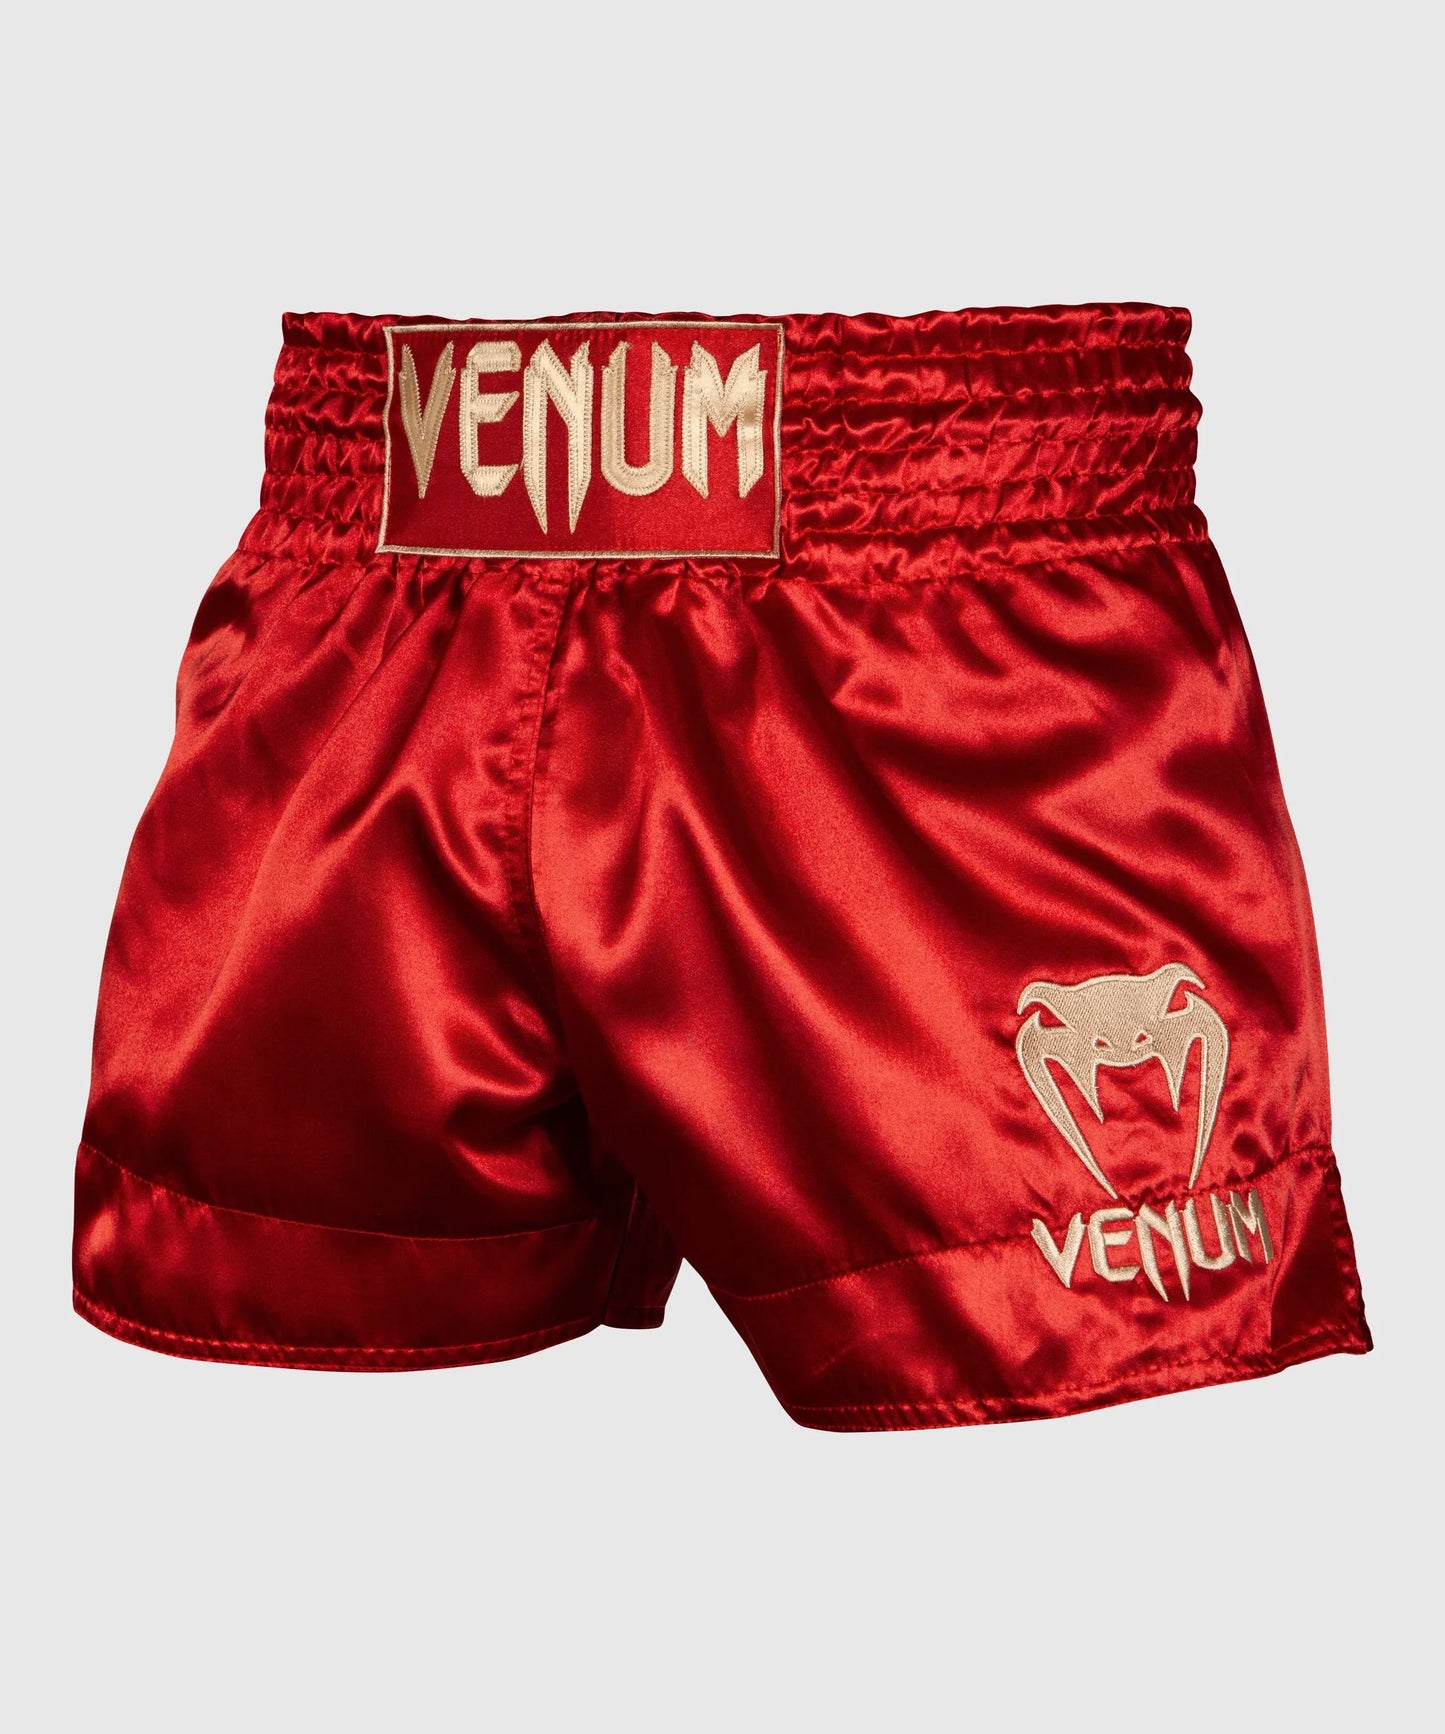 Pantaloncini Venum Thai Classic Rosso